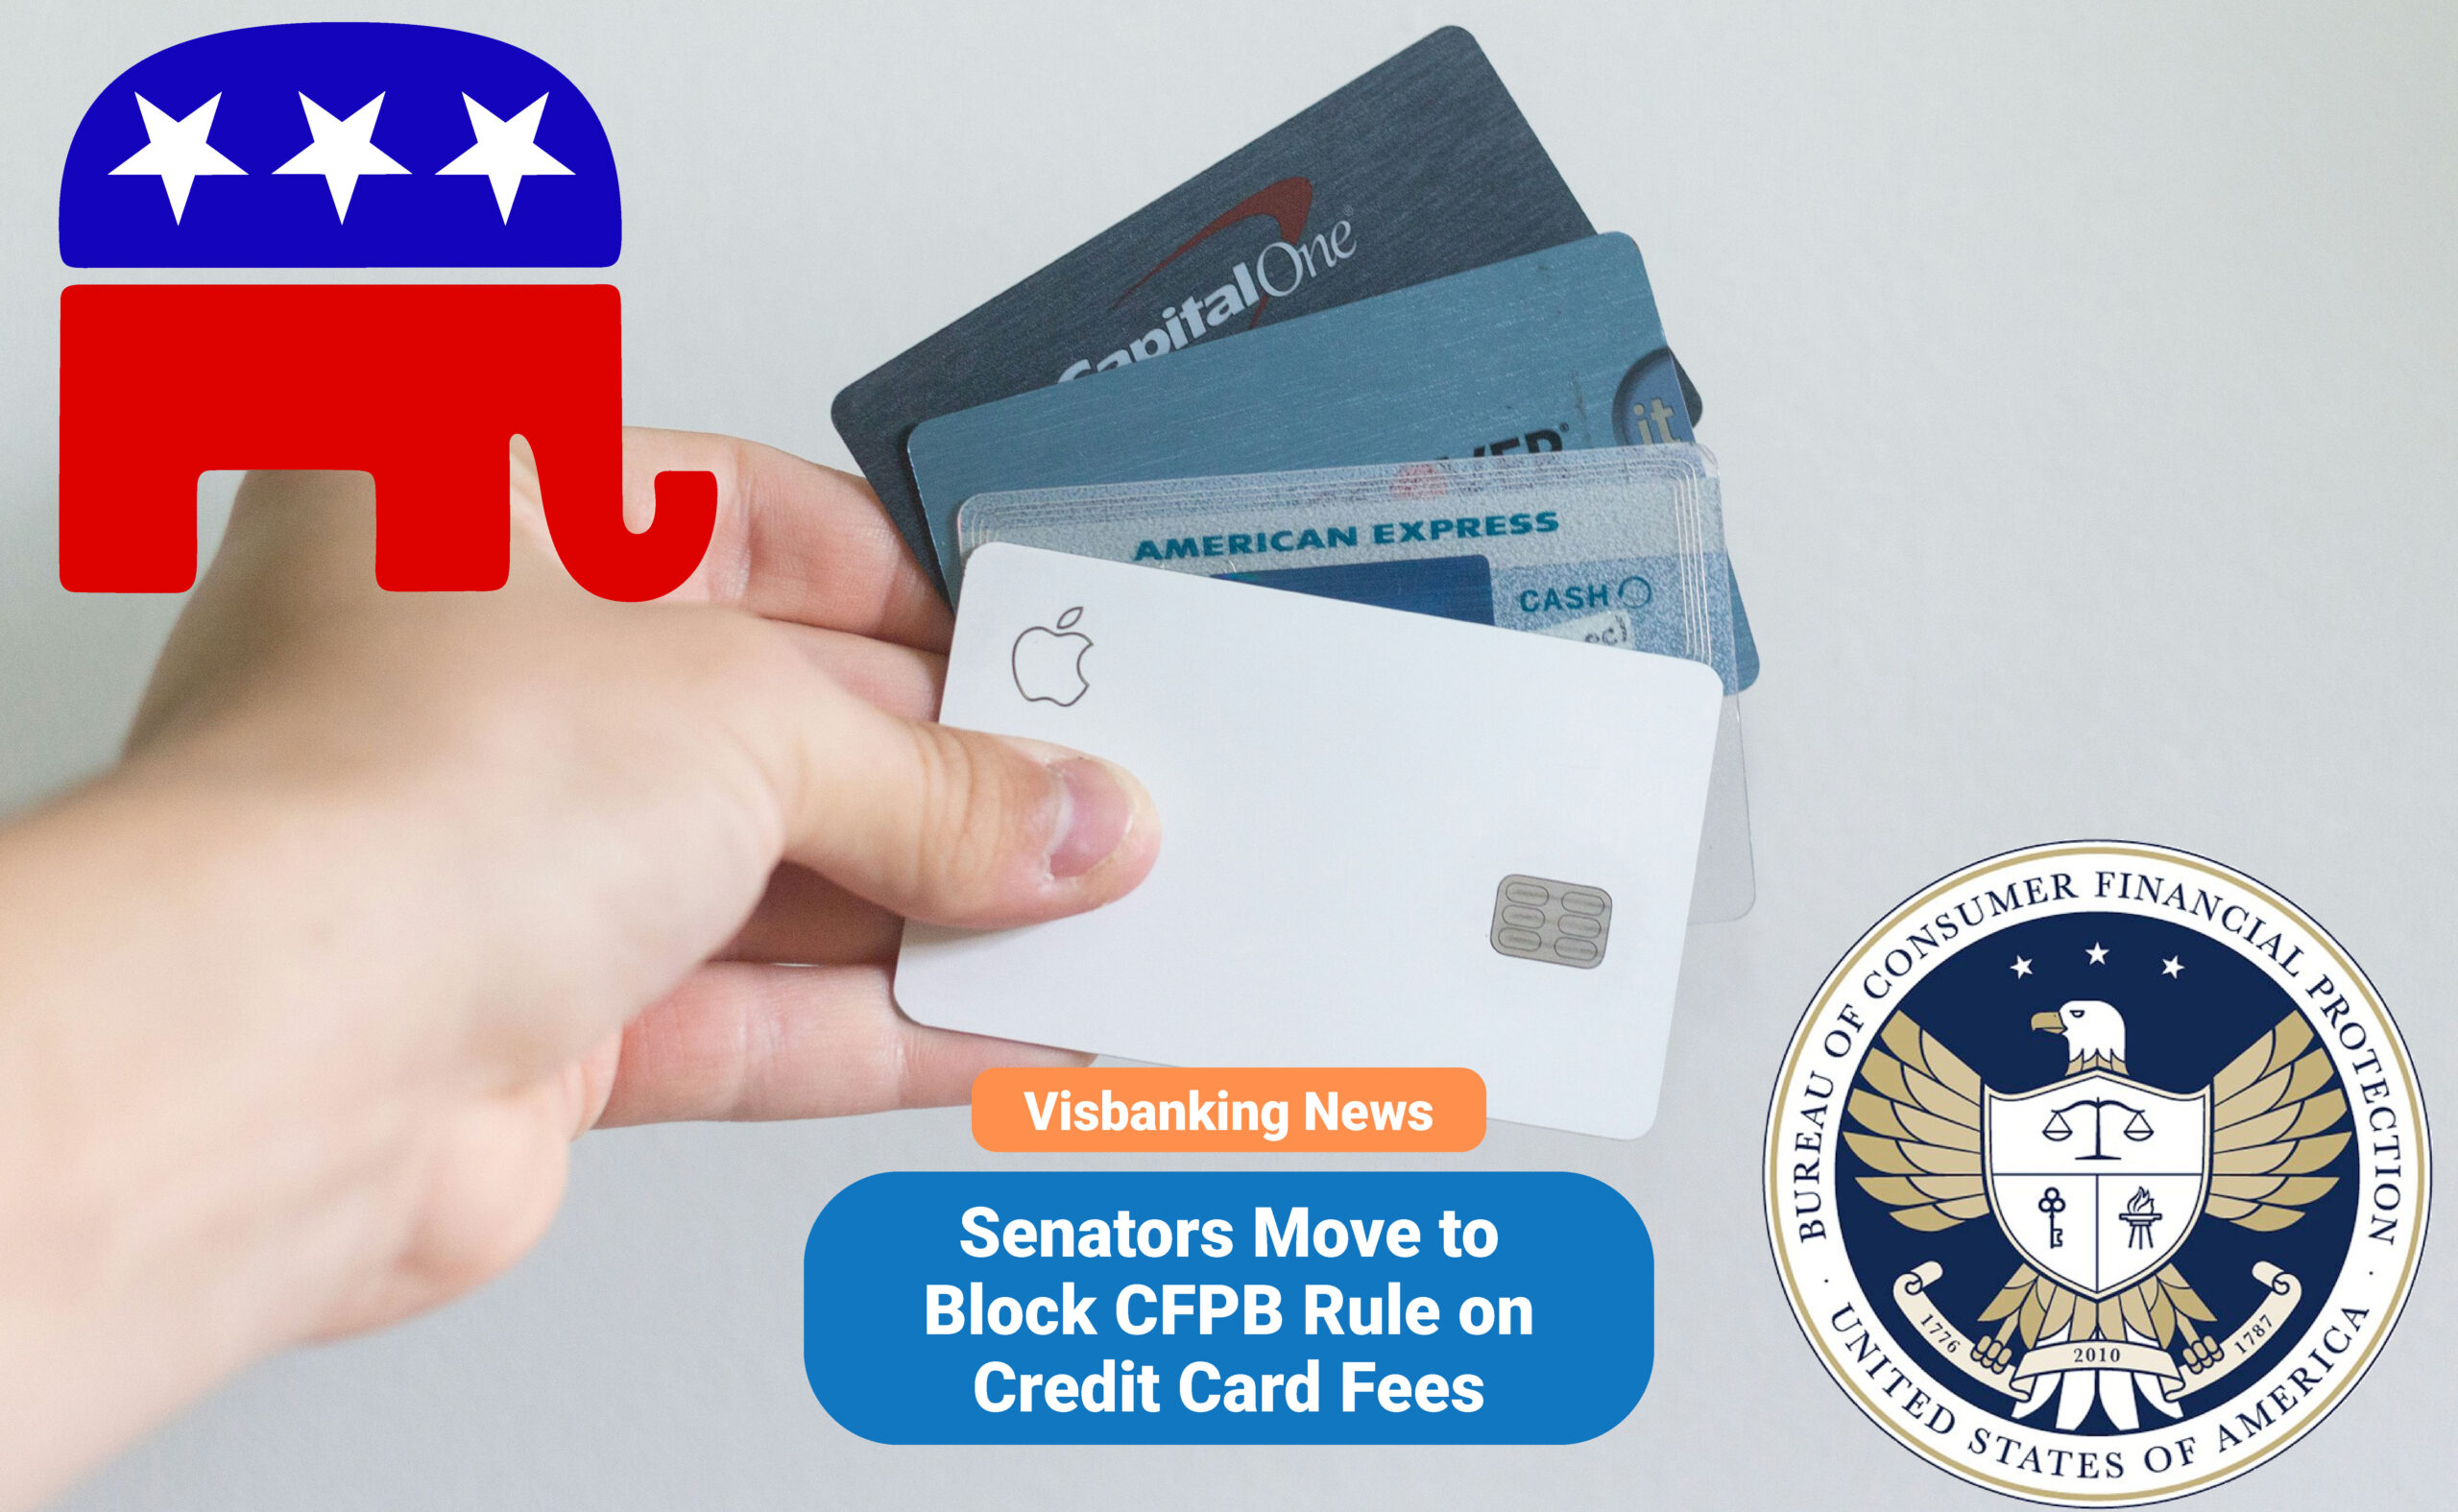 Senators Move to Block CFPB Rule on Credit Card Fees